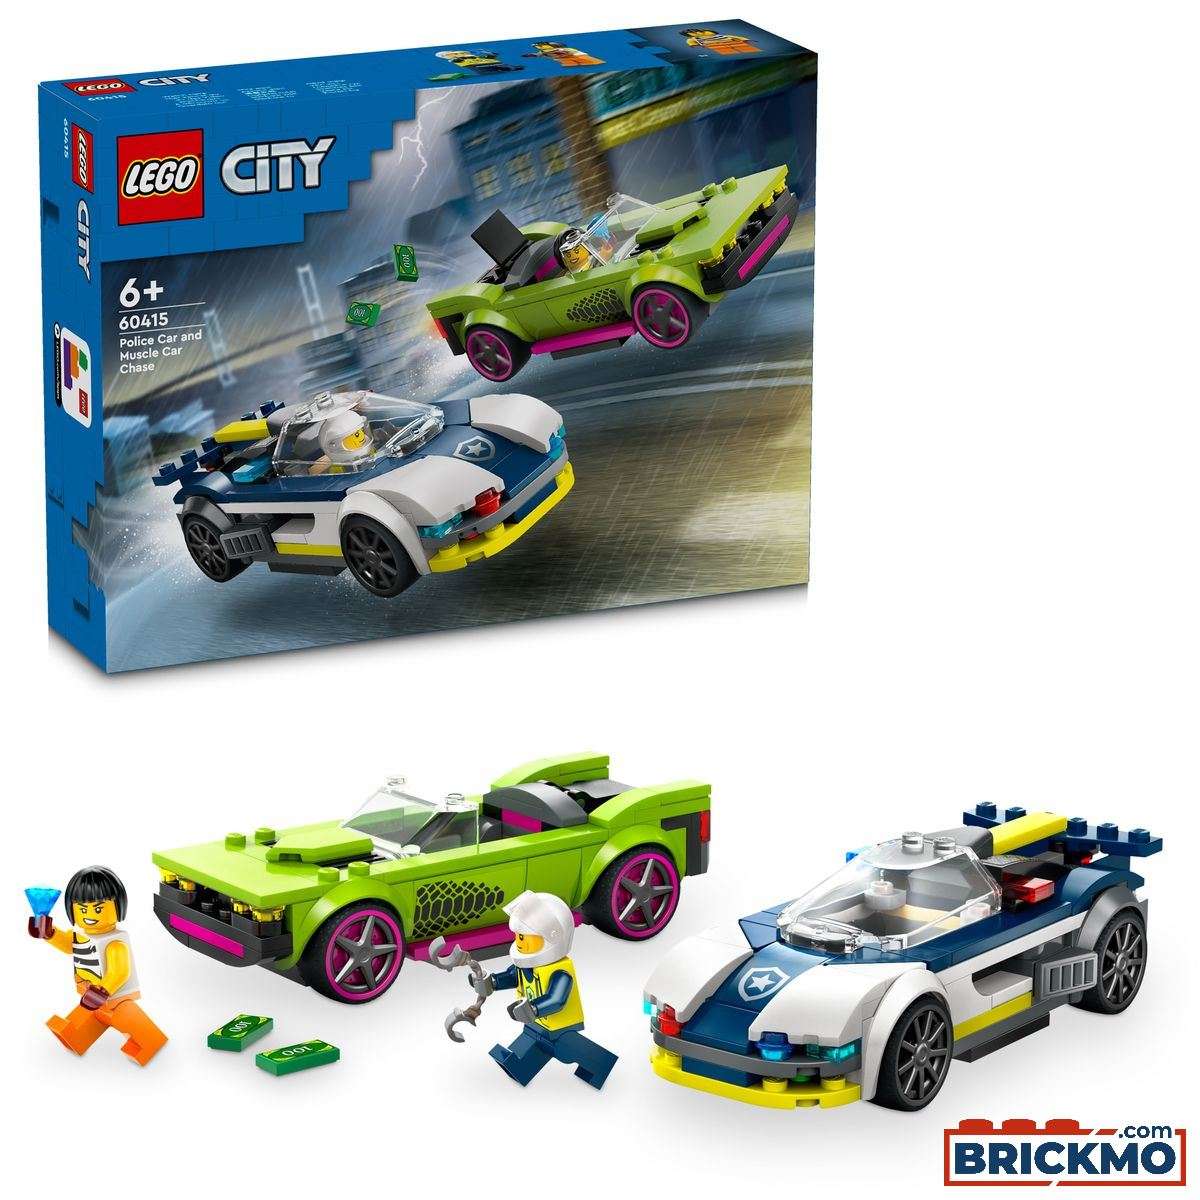 LEGO City 60415 Inseguimento della macchina da corsa 60415